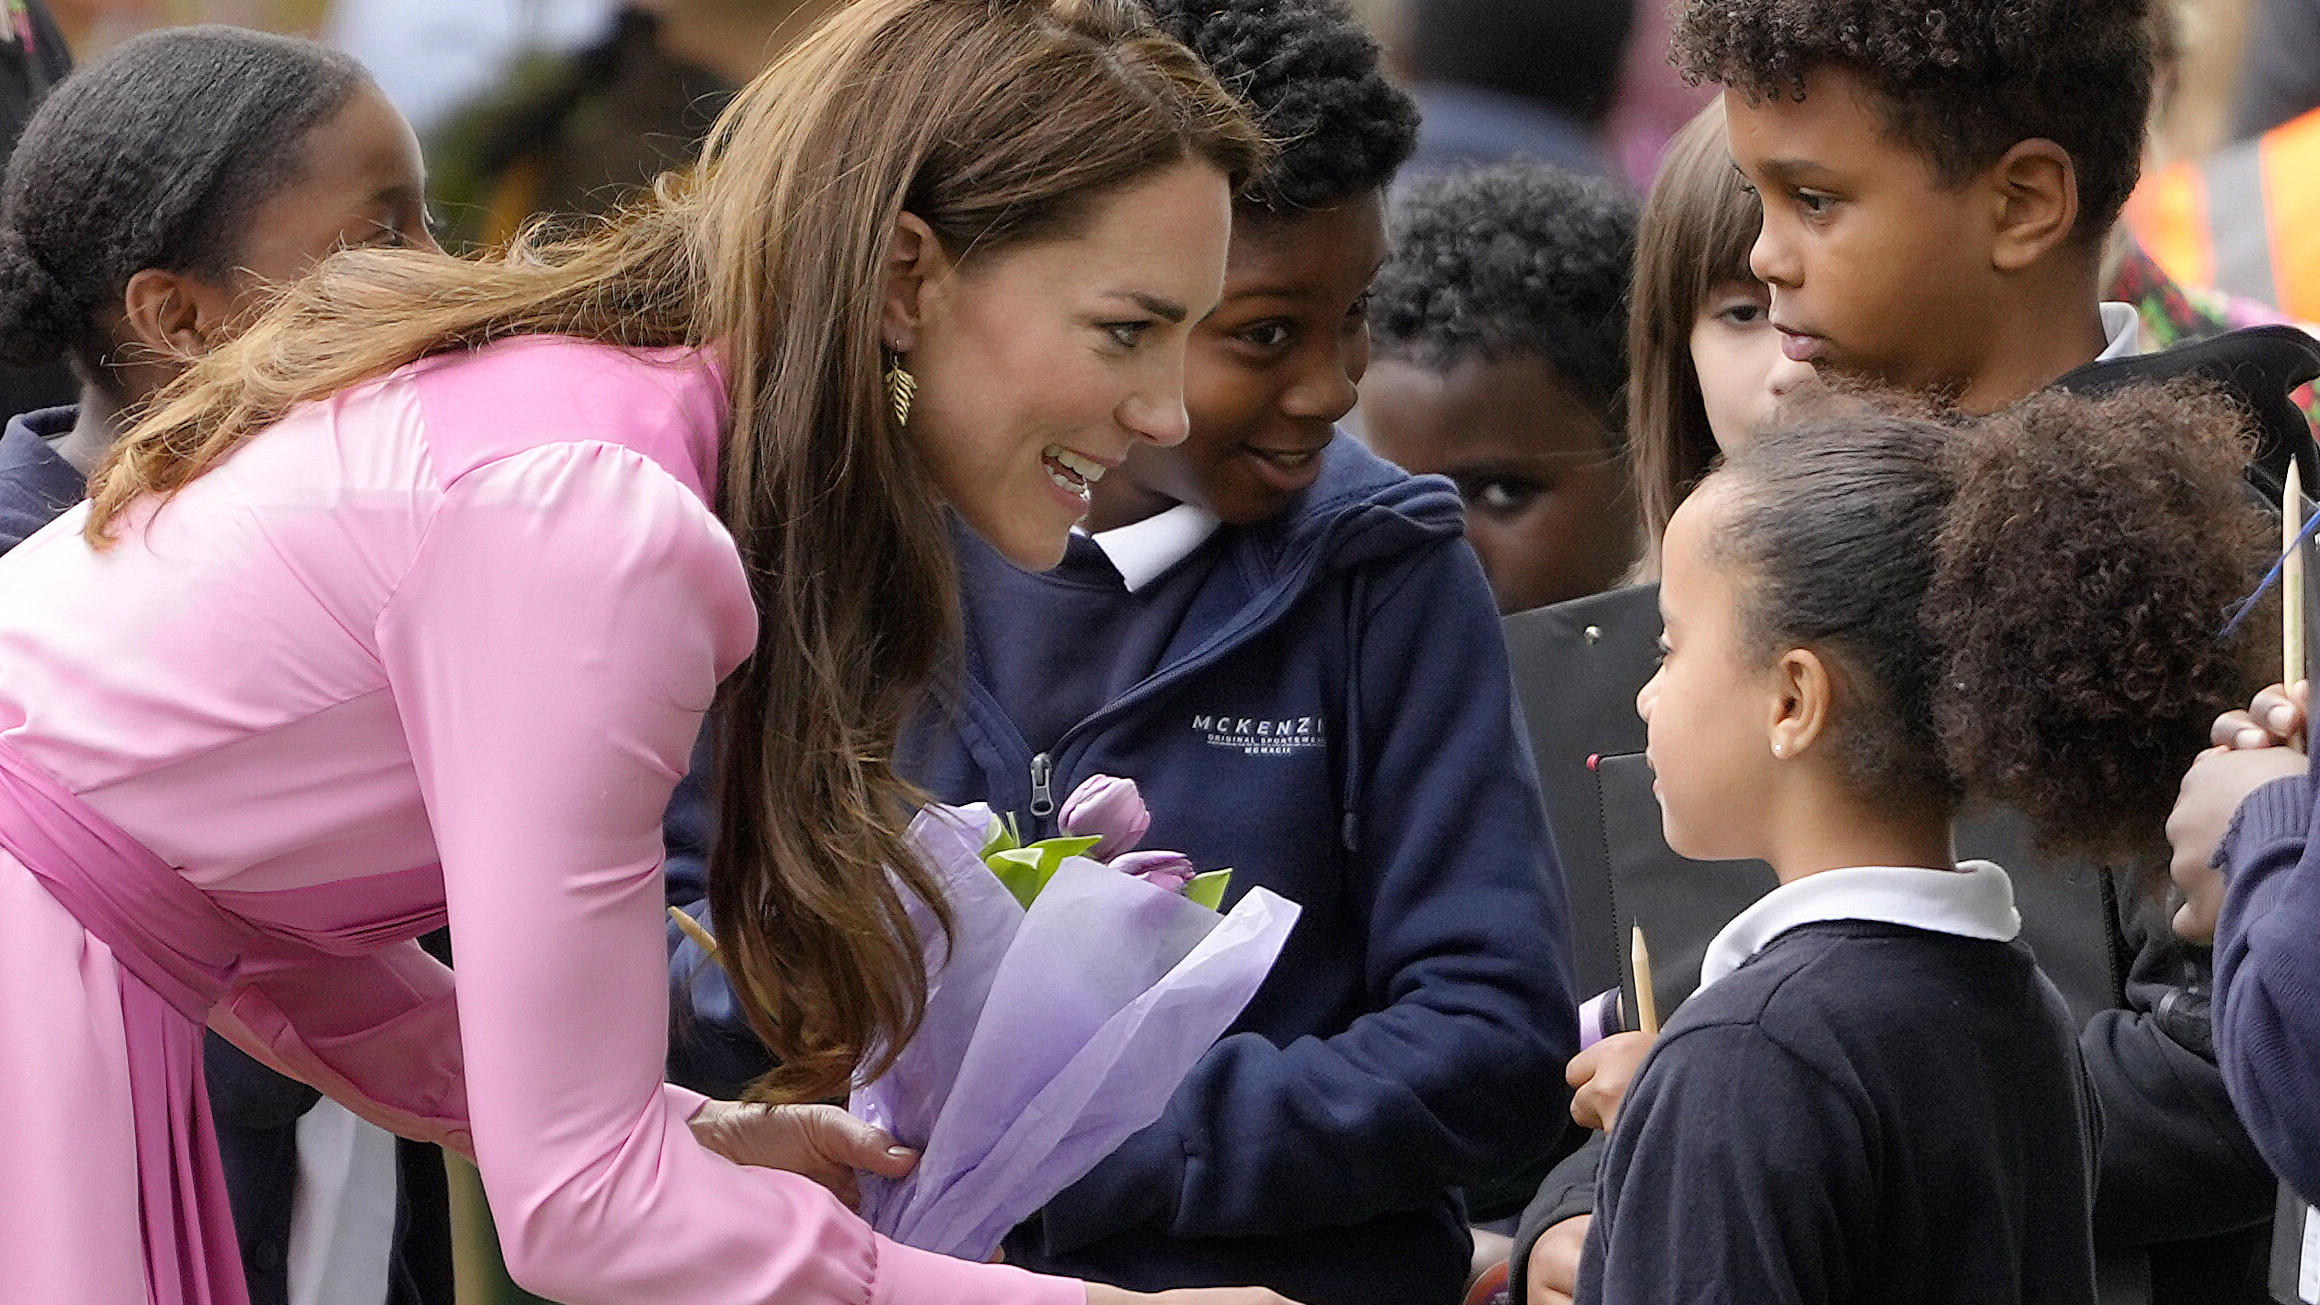 Prinzessin Kate war zu Besuch bei der "Chelsea Flower Show in London". 